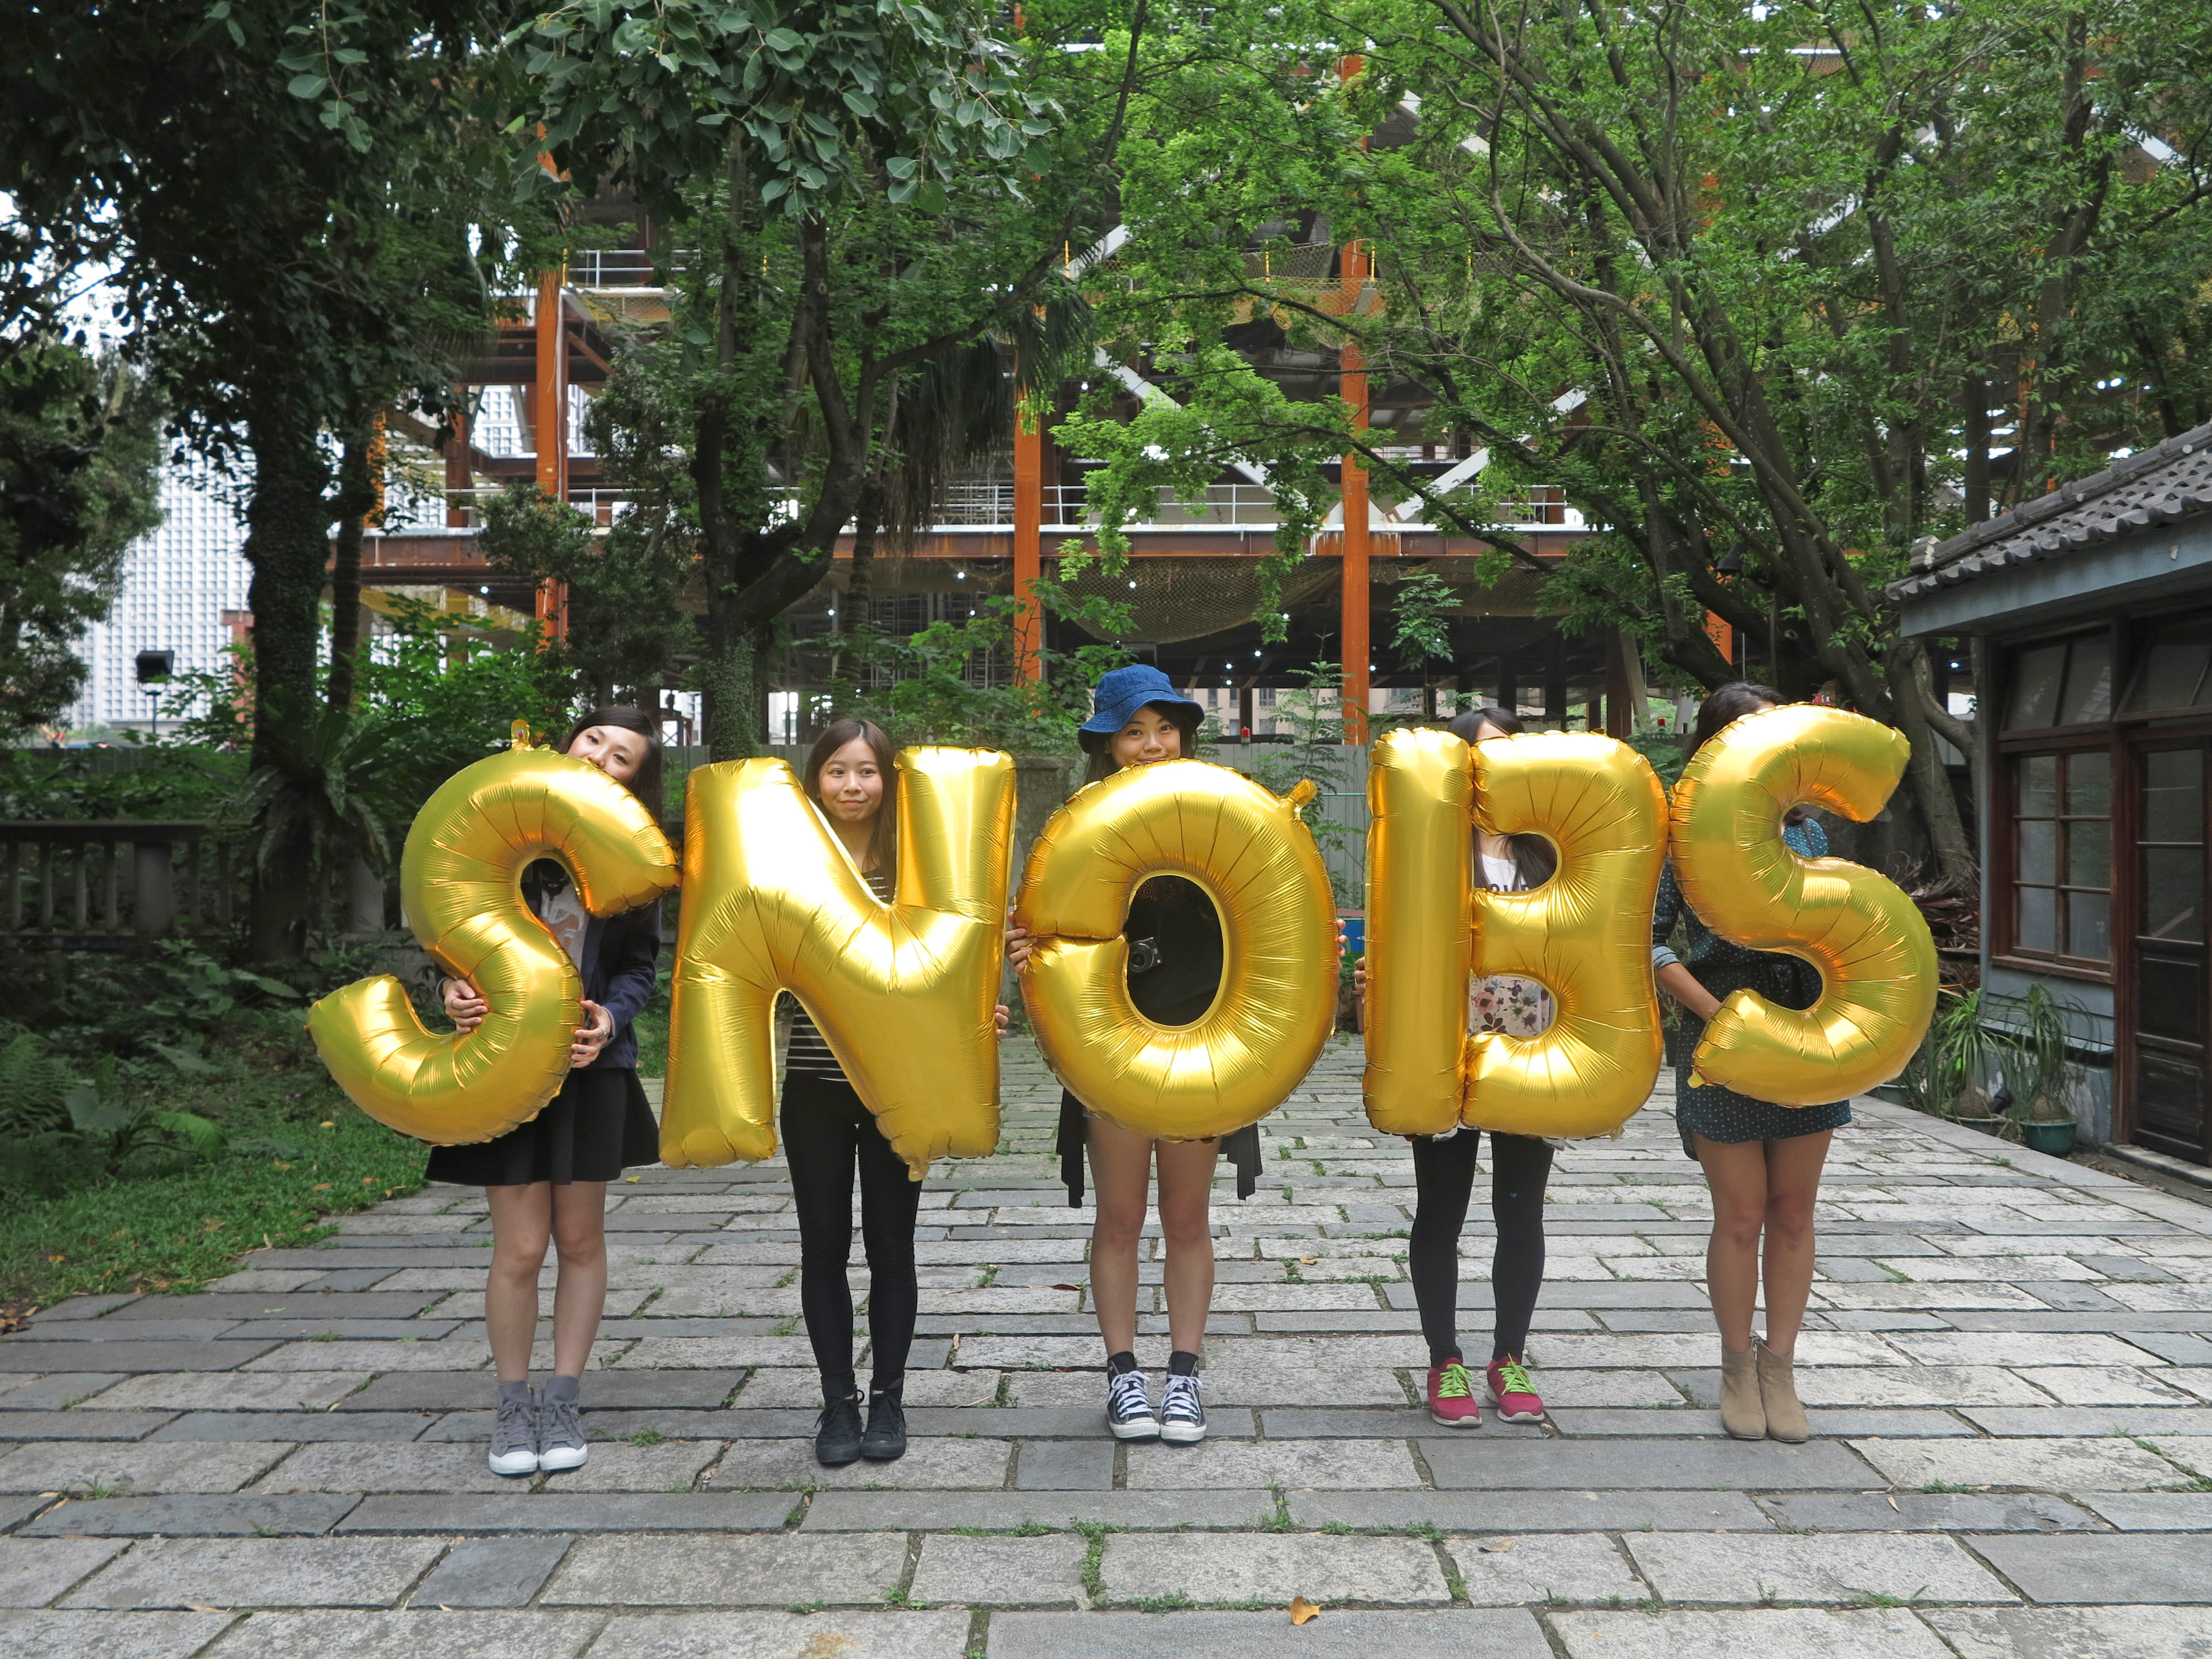 Taiwan, Taipei, Eslite Spectrum Songyan - Snobs, Silence Was Golden, golden balloons